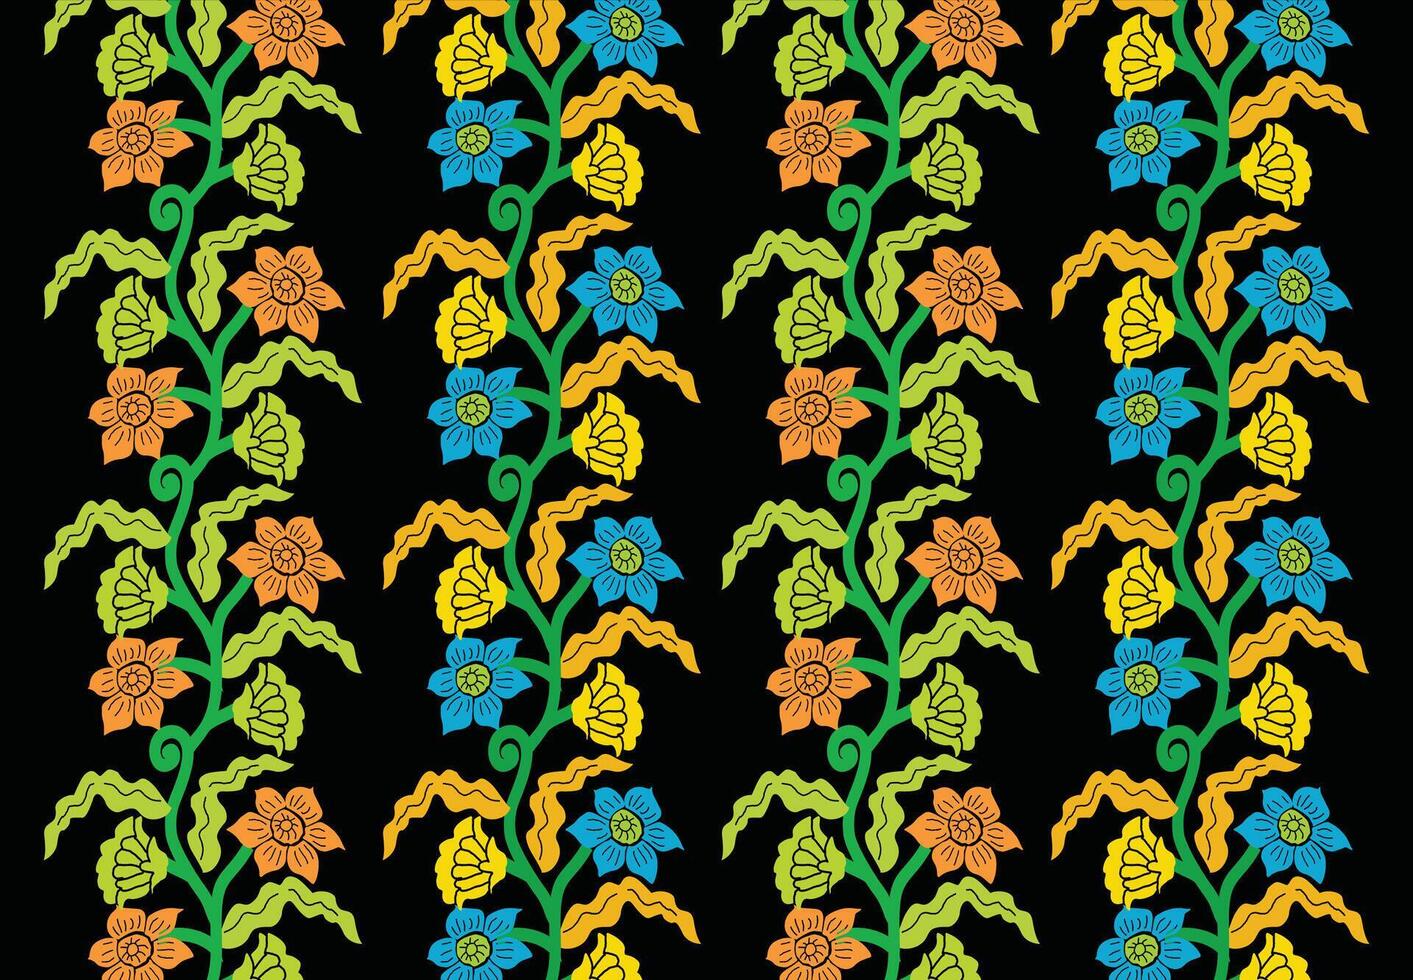 impreso indonesio batik motivos con exclusivo y clásico balinés estilo floral y planta patrones son adecuado para varios propósitos. eps 10 vector